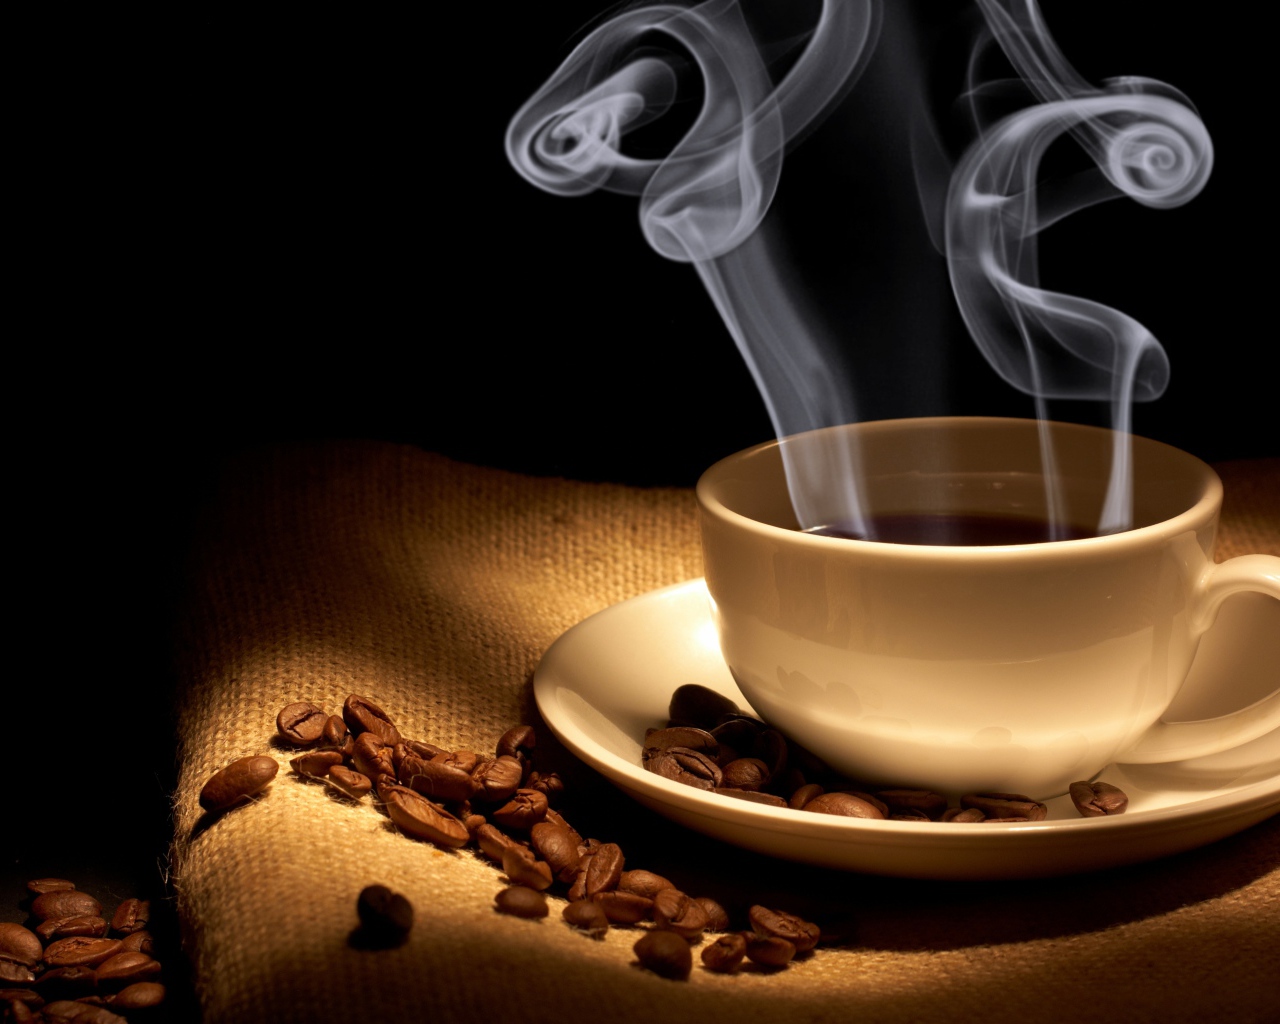 Coffee aroma